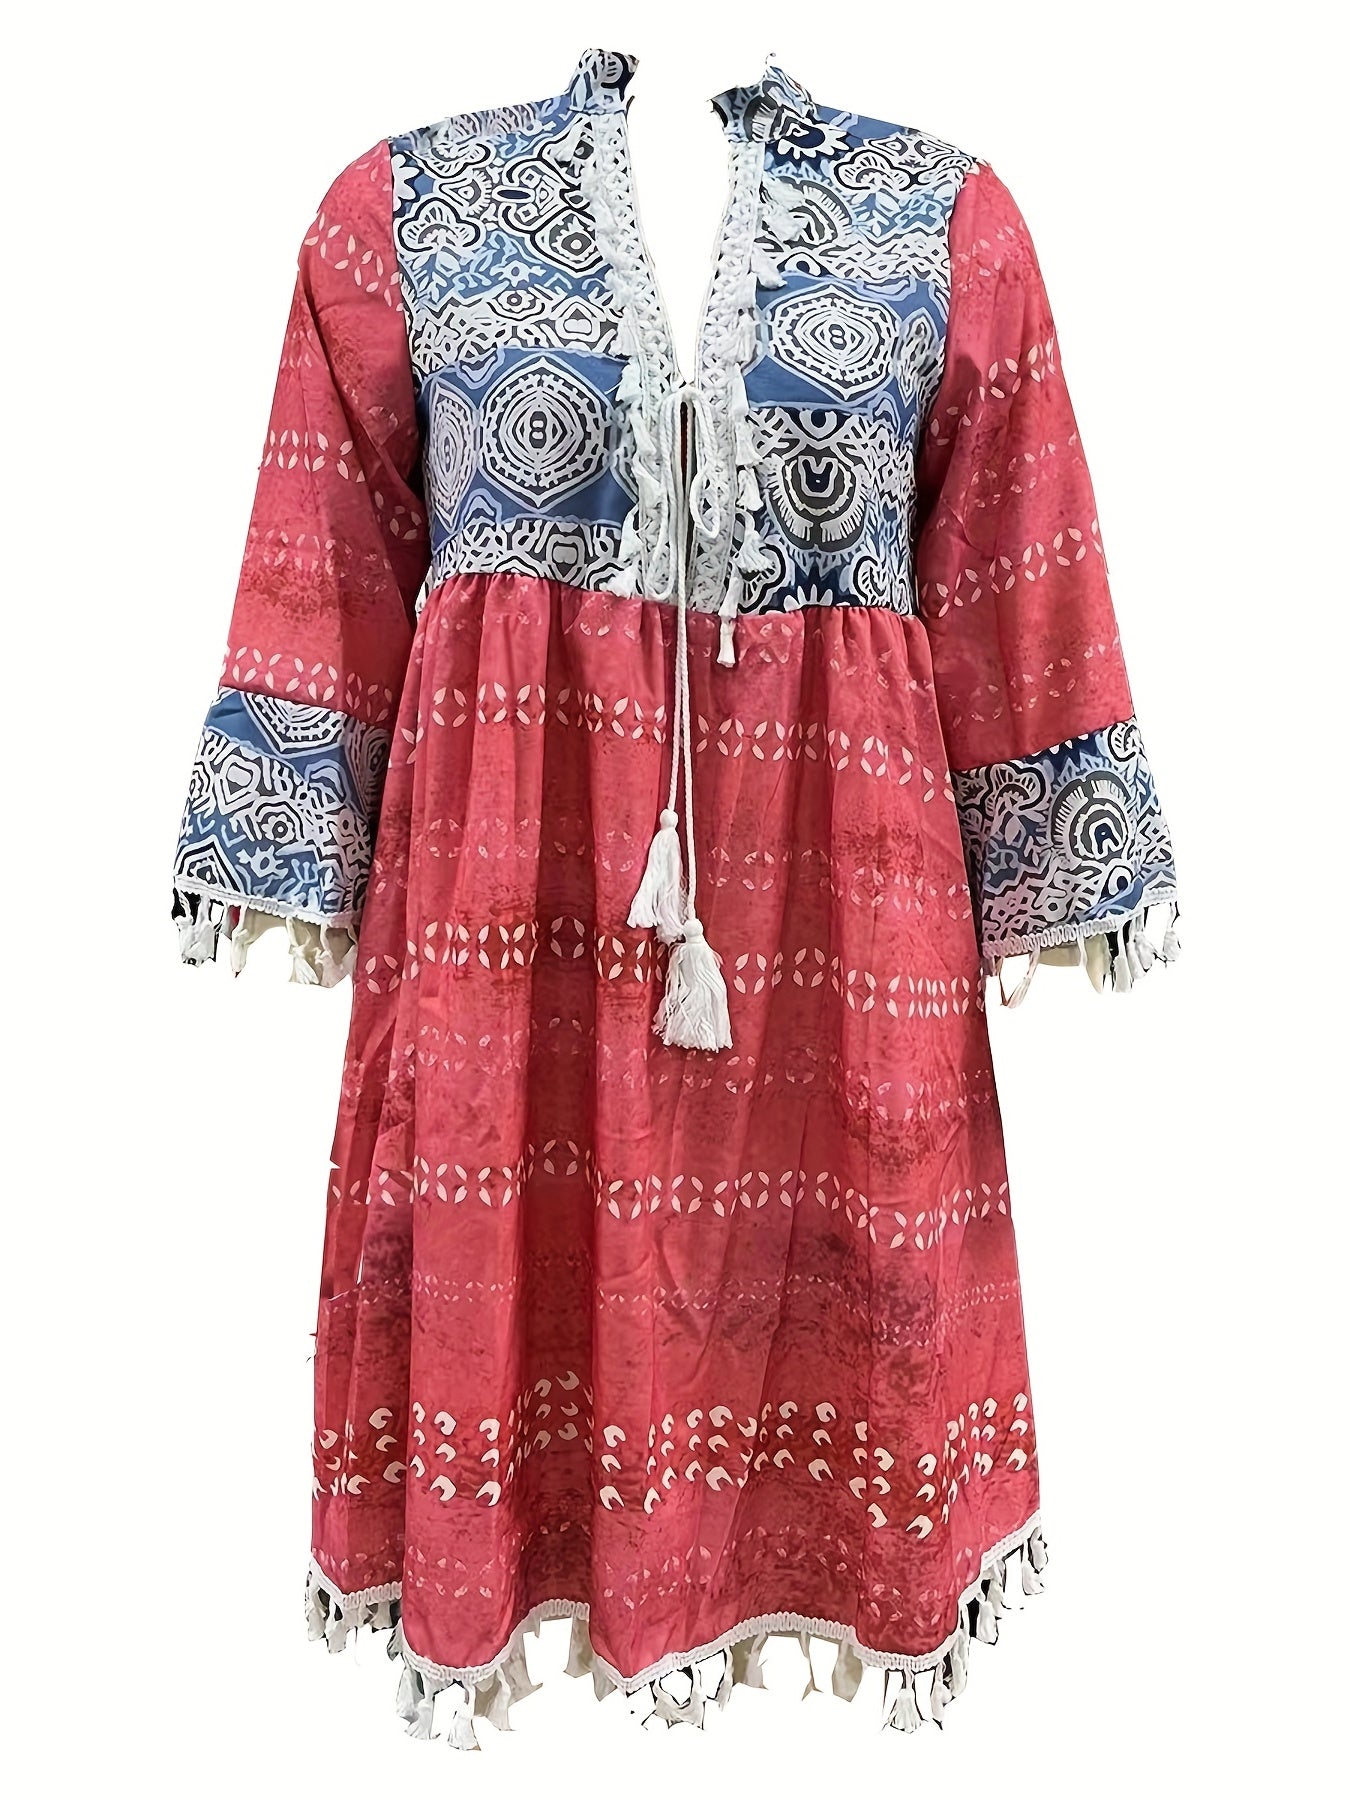 「lovevop」Retro Print Boho Dress, V Neck Tassels Casual Dress For Spring & Summer, Women's Clothing